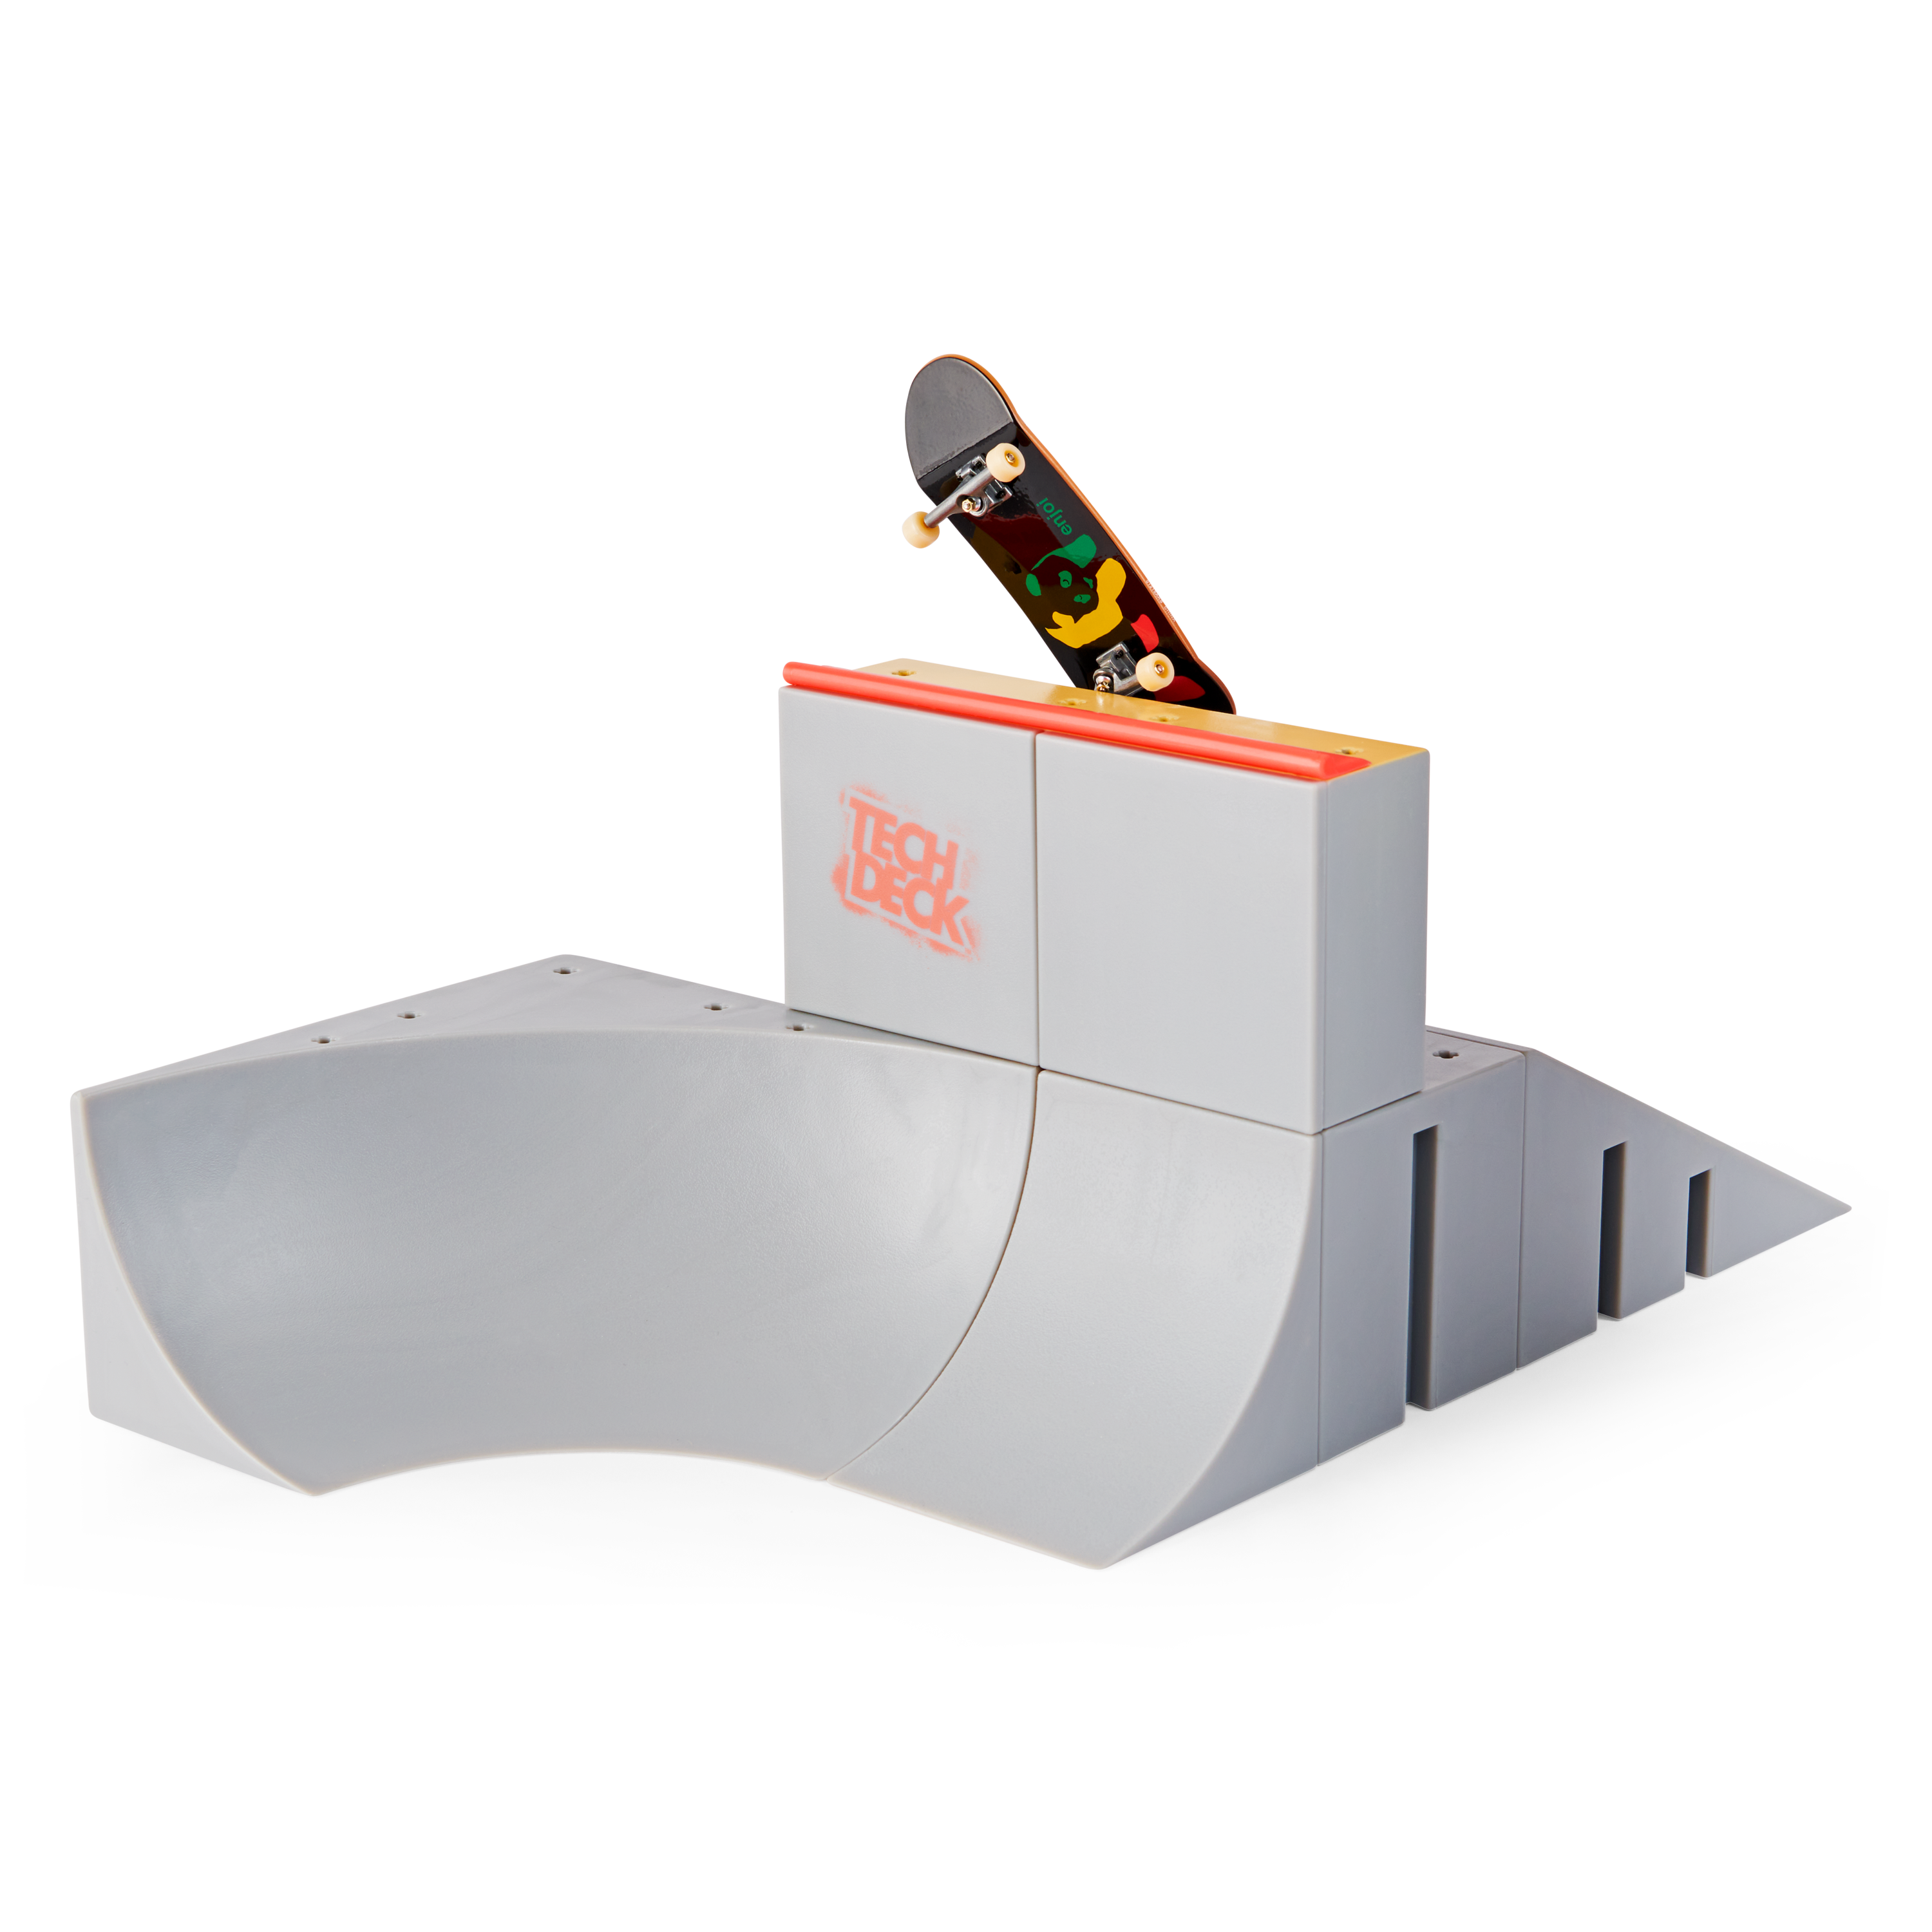 Tech deck, rampa jump n' grind starter kit con tecnologia x-connect, personalizzabile e modulabile, mini skate esclusivo, per bambini dai 6 anni in su - 